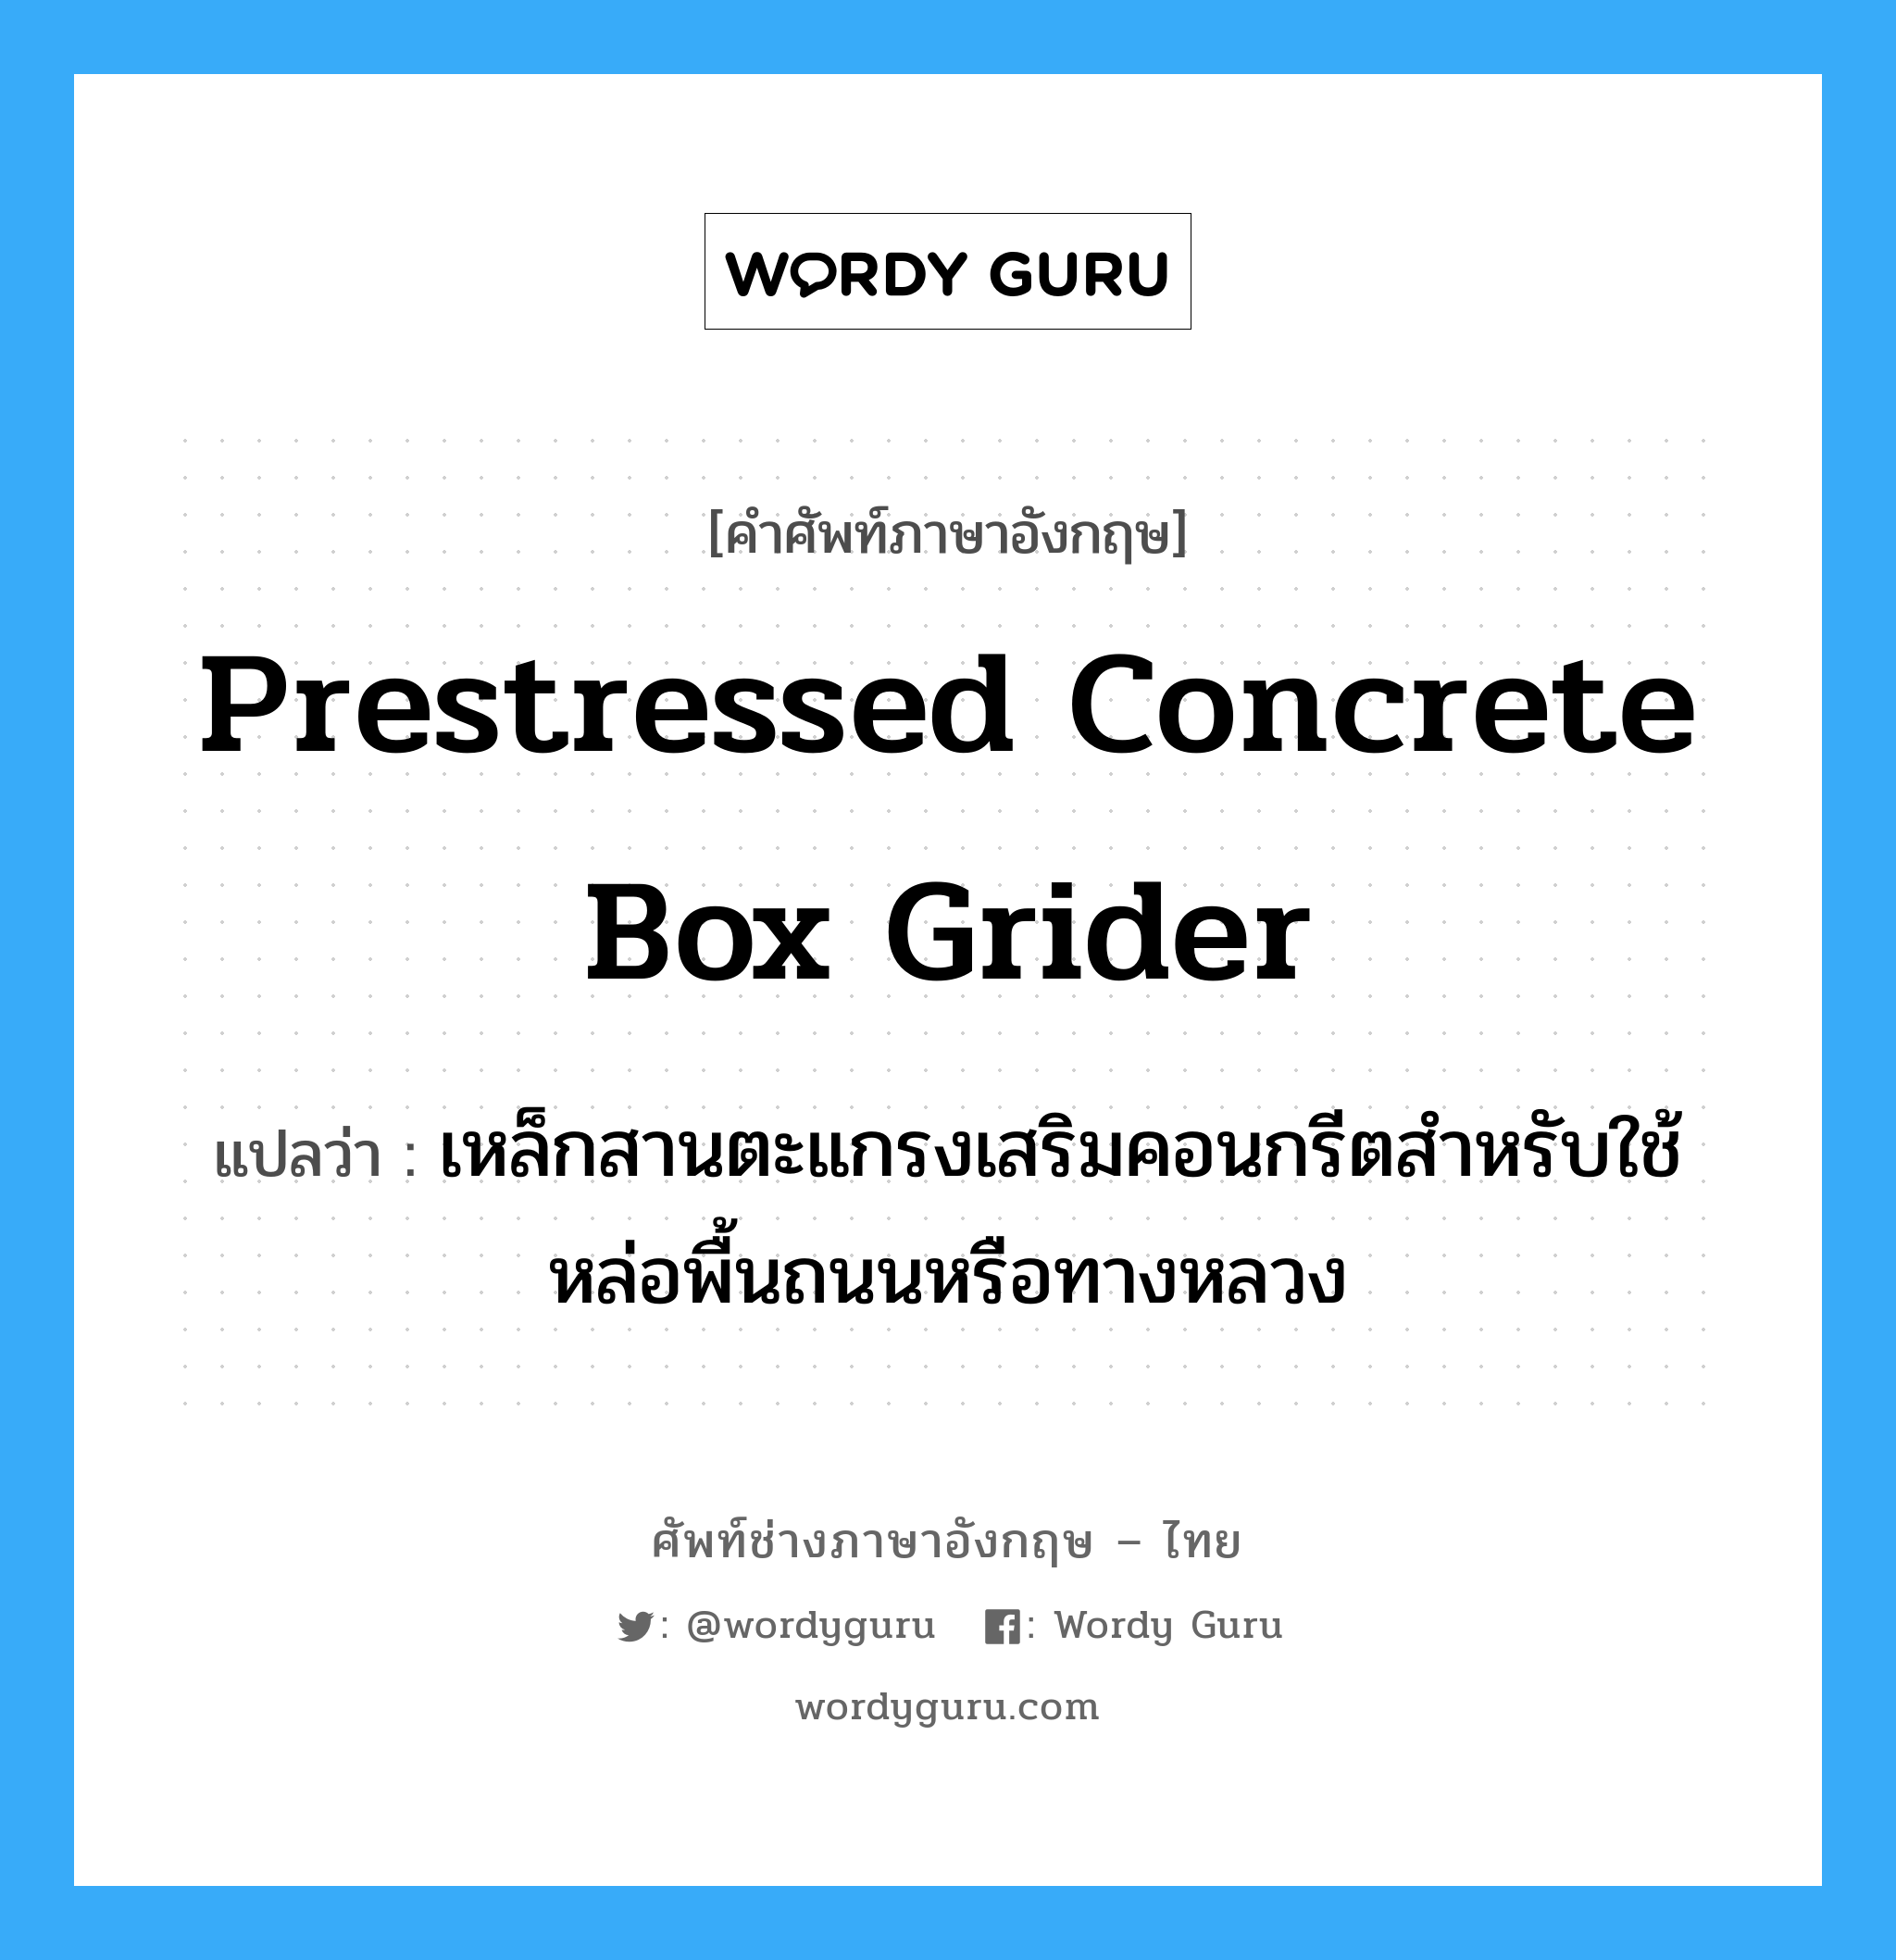 prestressed concrete box grider แปลว่า?, คำศัพท์ช่างภาษาอังกฤษ - ไทย prestressed concrete box grider คำศัพท์ภาษาอังกฤษ prestressed concrete box grider แปลว่า เหล็กสานตะแกรงเสริมคอนกรีตสำหรับใช้หล่อพื้นถนนหรือทางหลวง